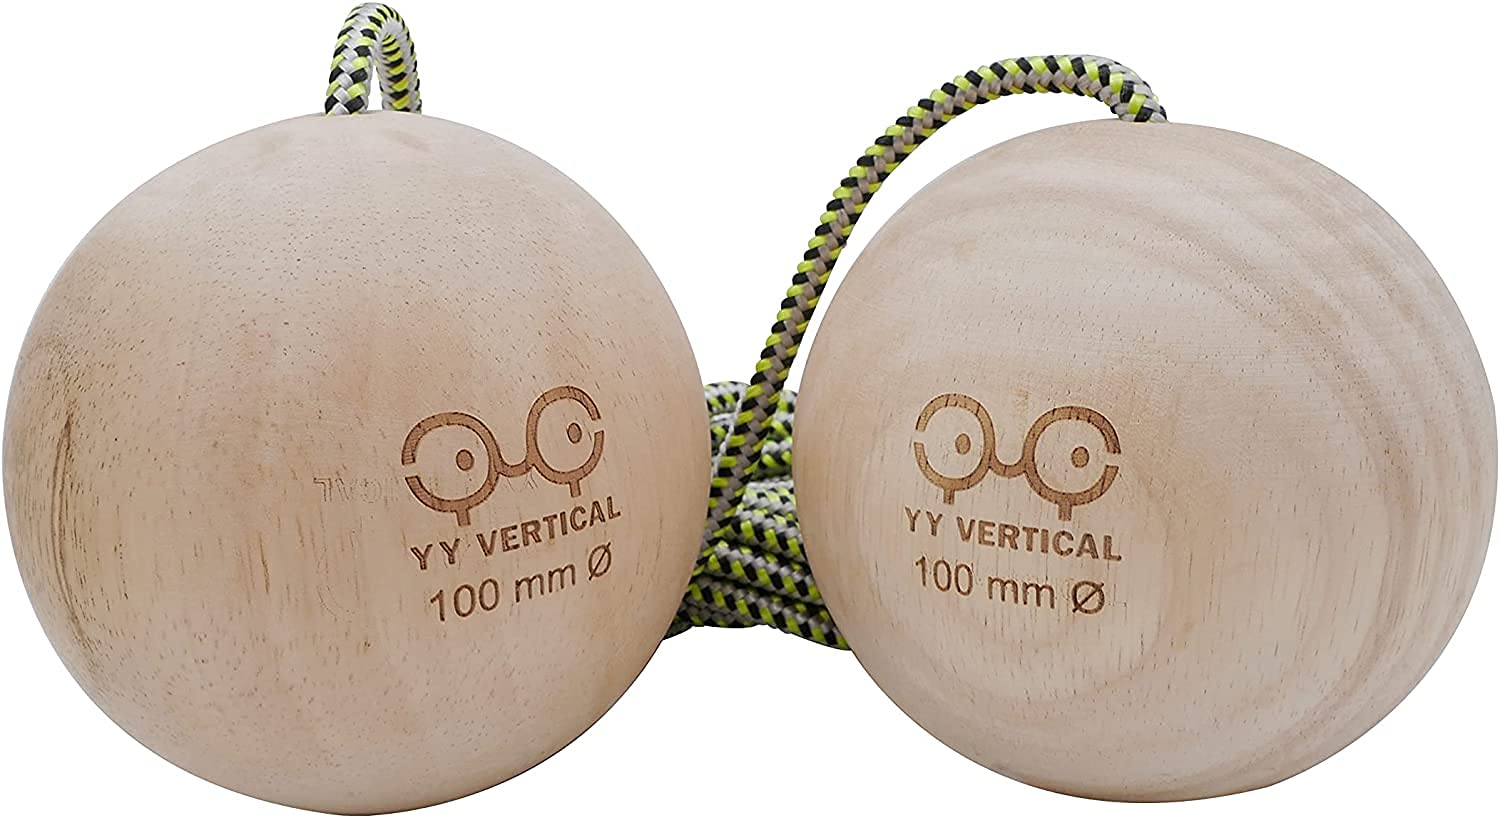 YY Vertical 80 Climbing Balls 80 mm aus recyceltem Holz für Klettertraining (Wird paarweise verkauft), Taille Unique